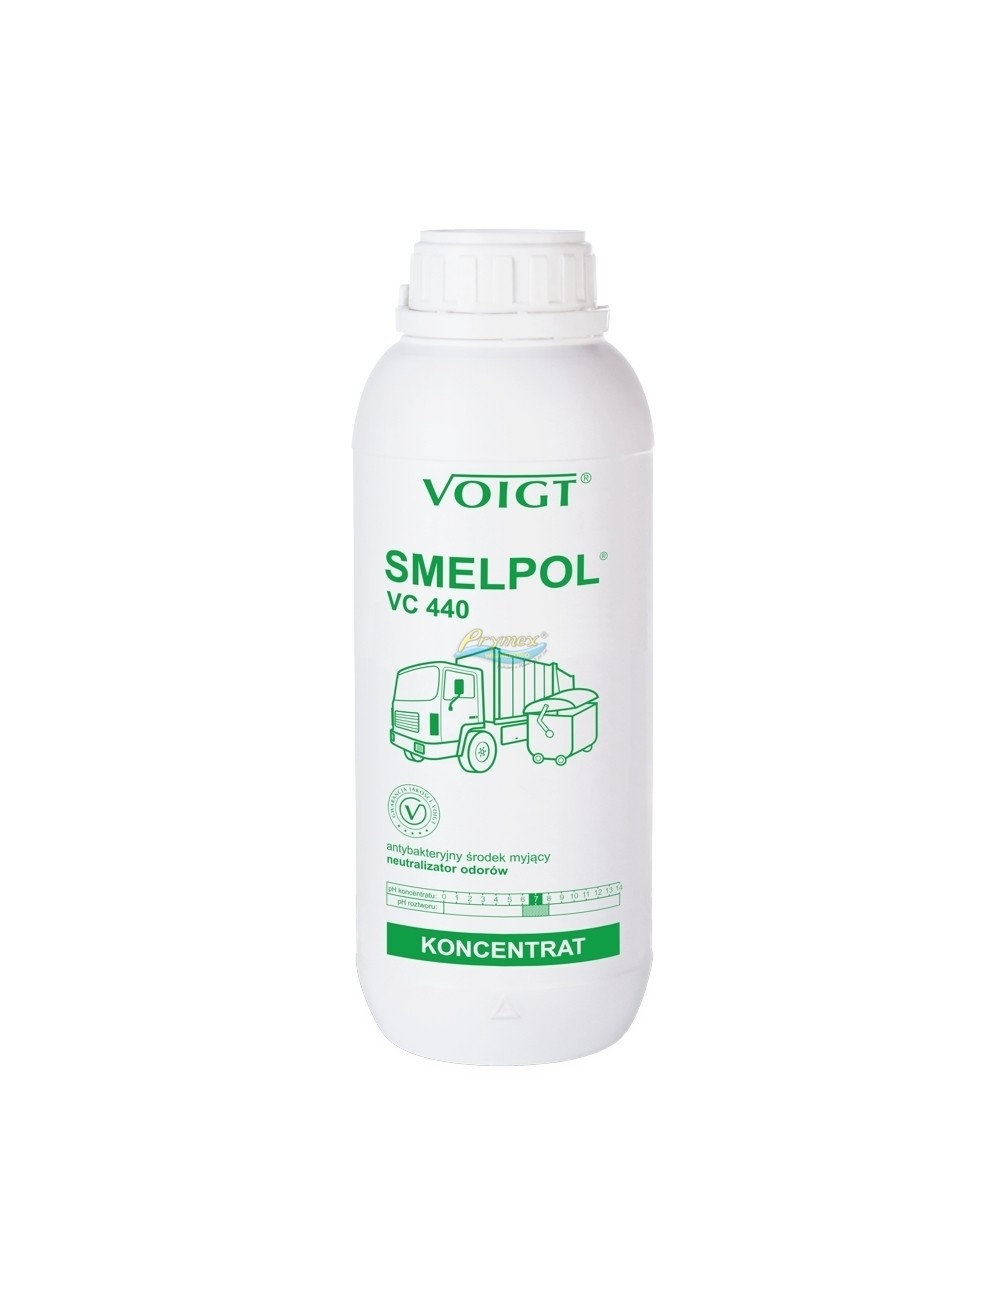 Voigt Smelpol VC 440 Koncentrat Antybakteryjny Środek Myjący Neutralizator Odorów 1 L